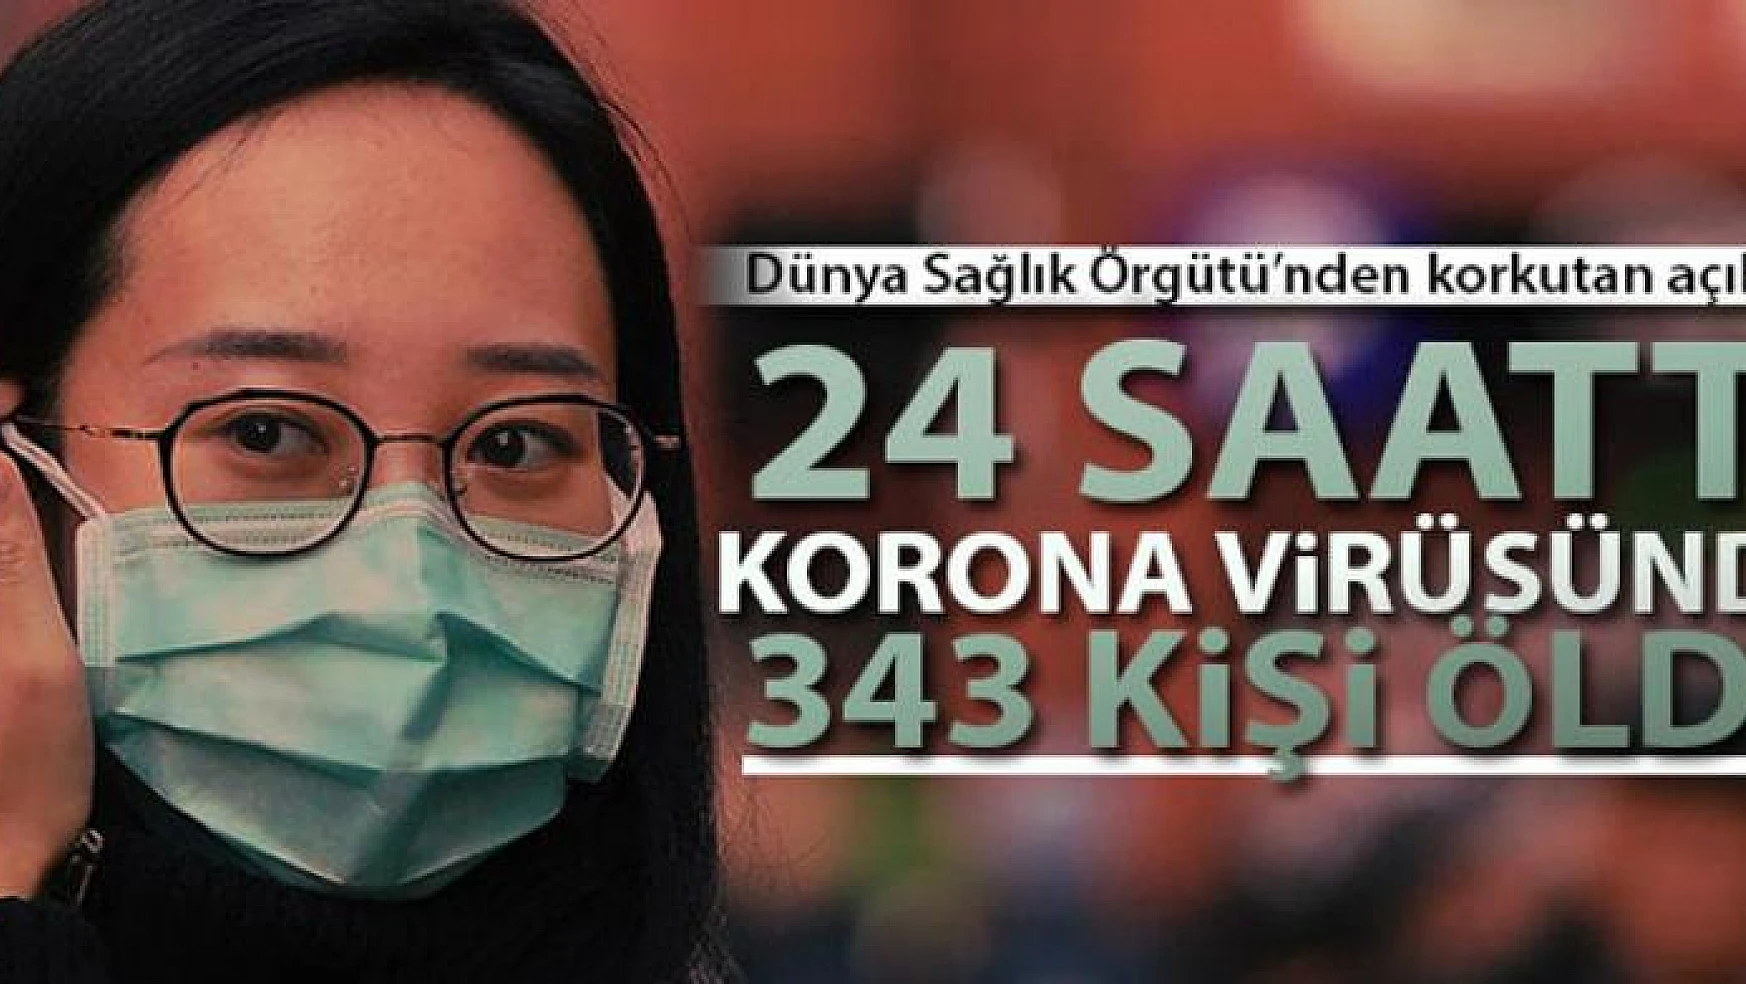 WHO: '24 saatte korona virüsünden 343 kişi öldü'